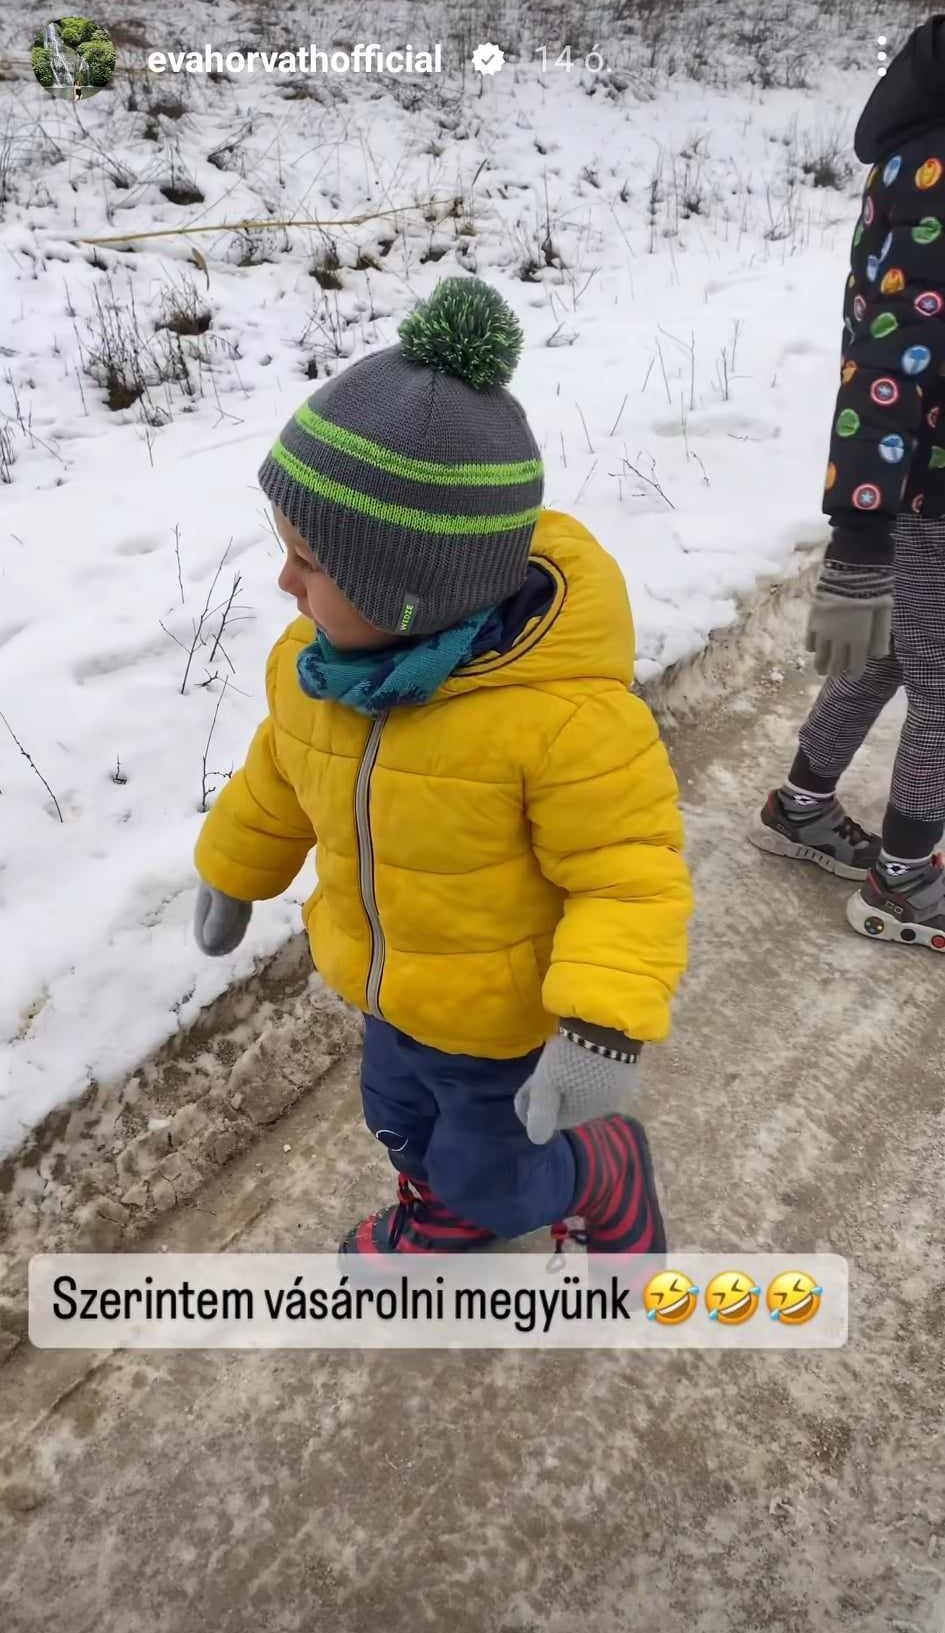 Horvát éva kisfia először találkozik hóval
